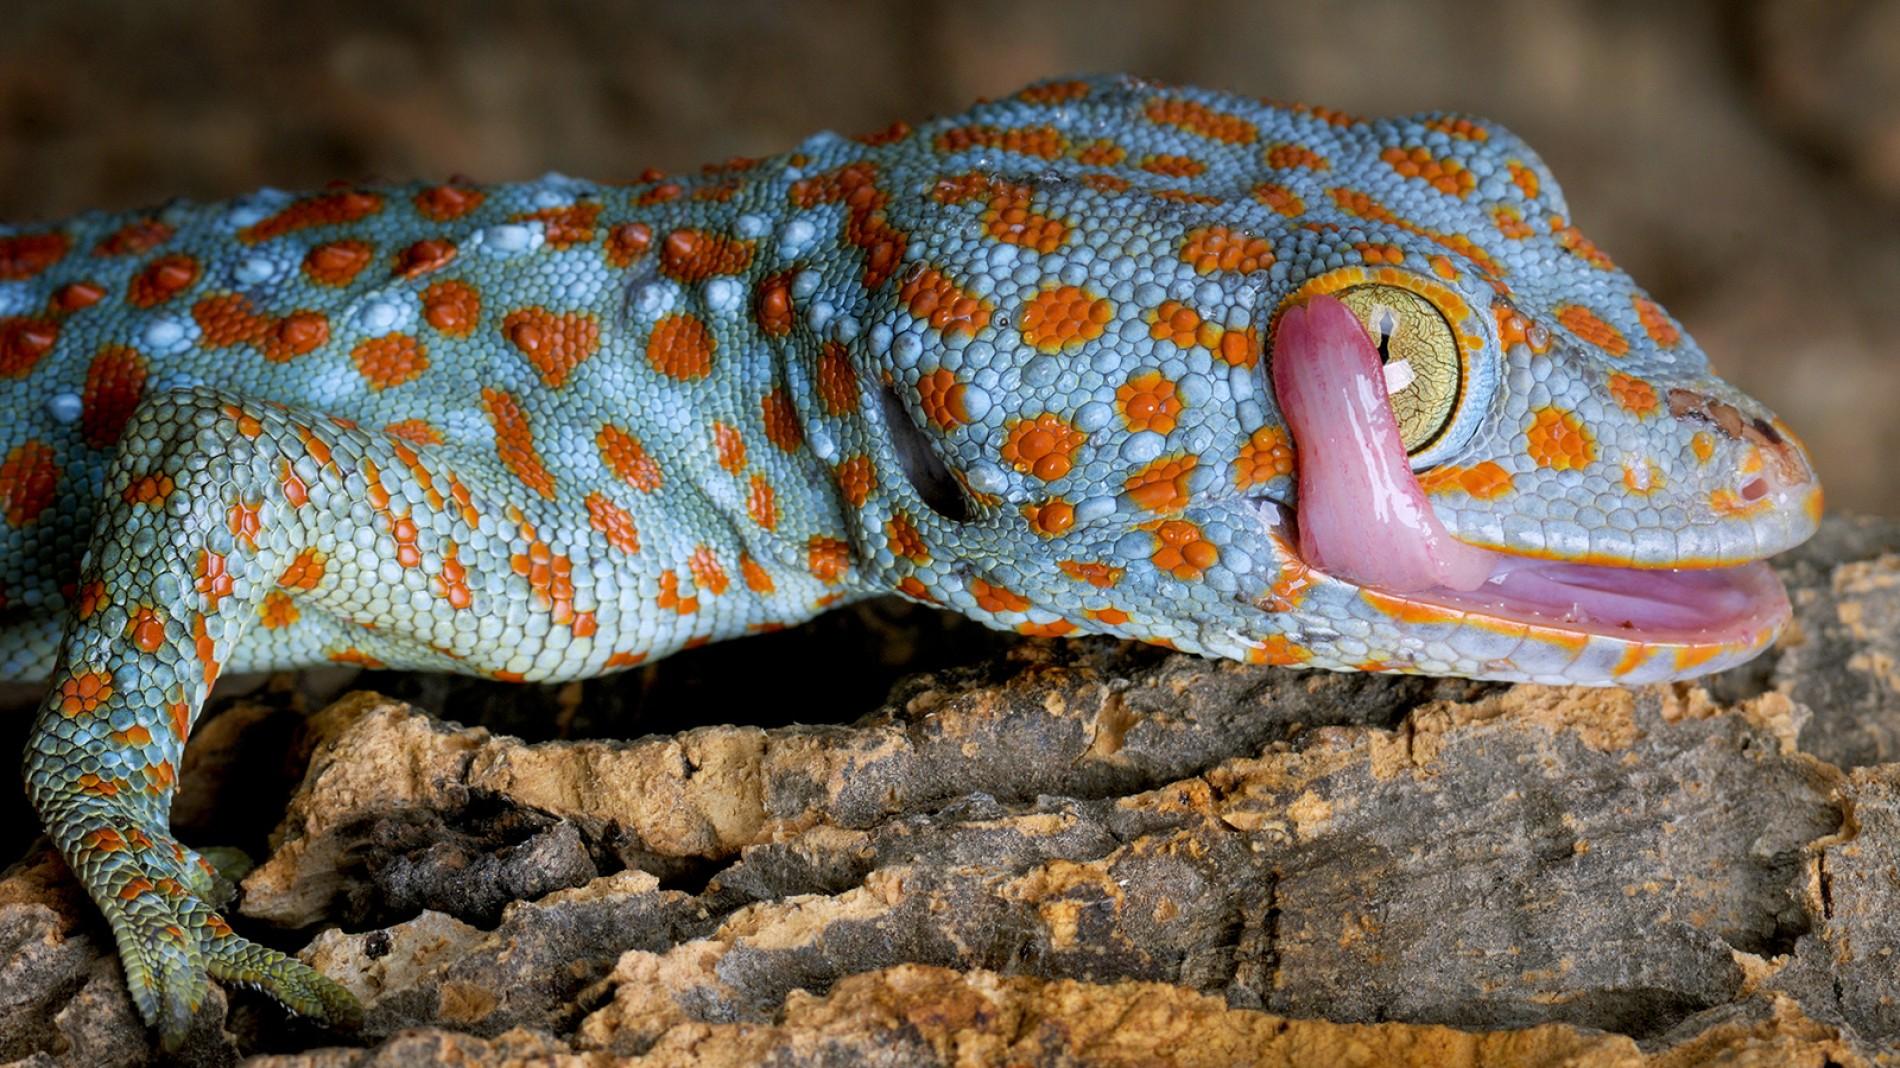 ww-reptiles-tokay-gecko.ngsversion.1461604316581.adapt.1900.1.jpg